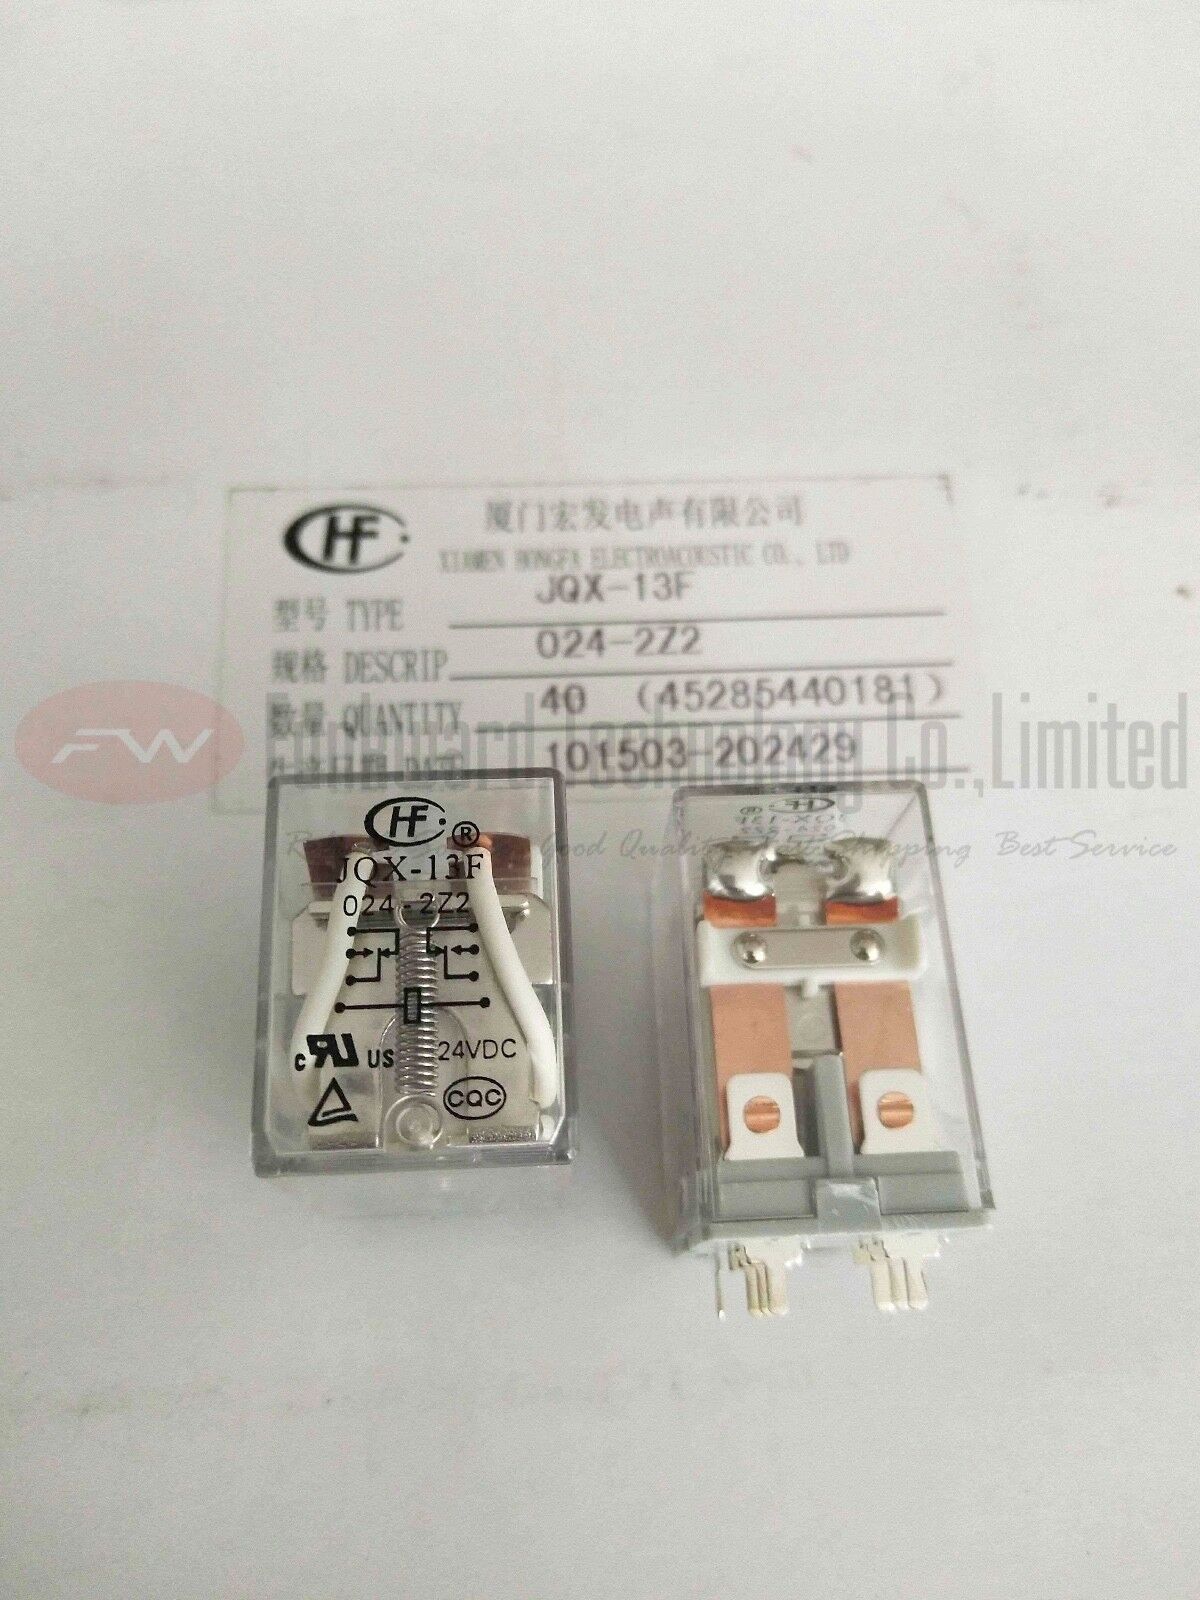 JQX-13F/024-2Z2 HF13F/024-2Z2 Intermediate Relay 10A 24VDC 8 Pins x 20PCS NEW